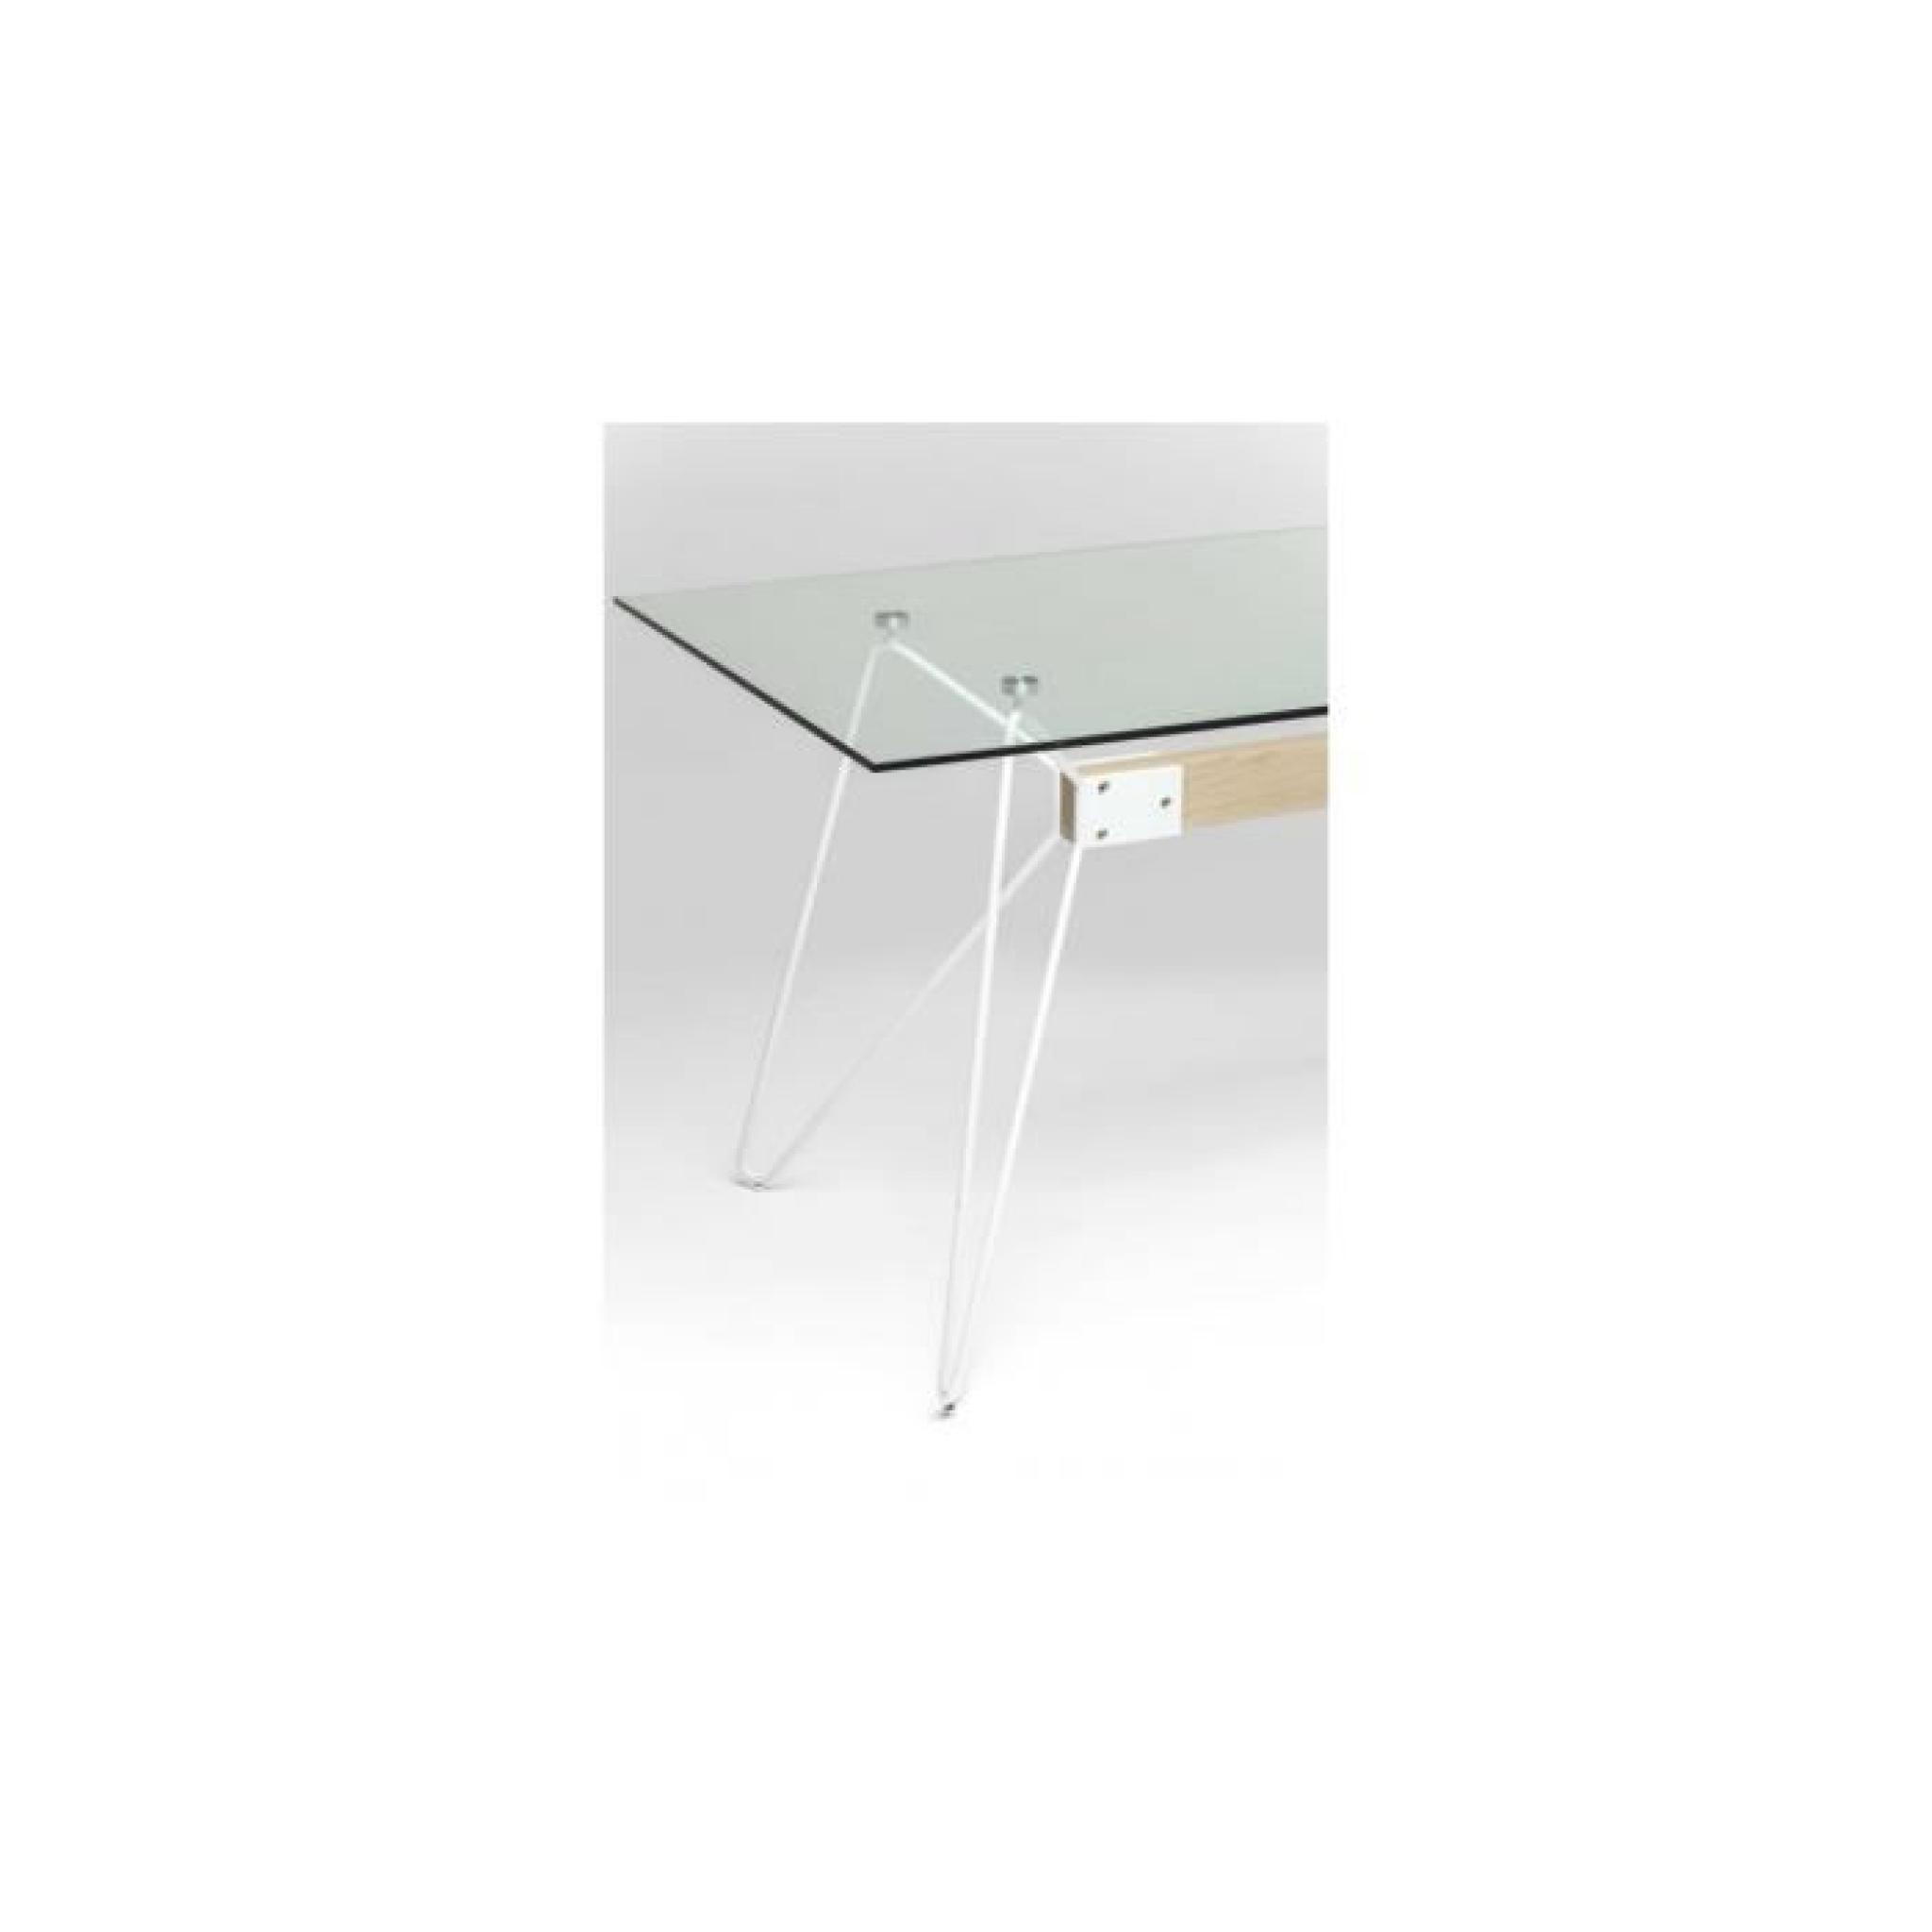 Table en verre Slope 160x80cm Kare Design pas cher